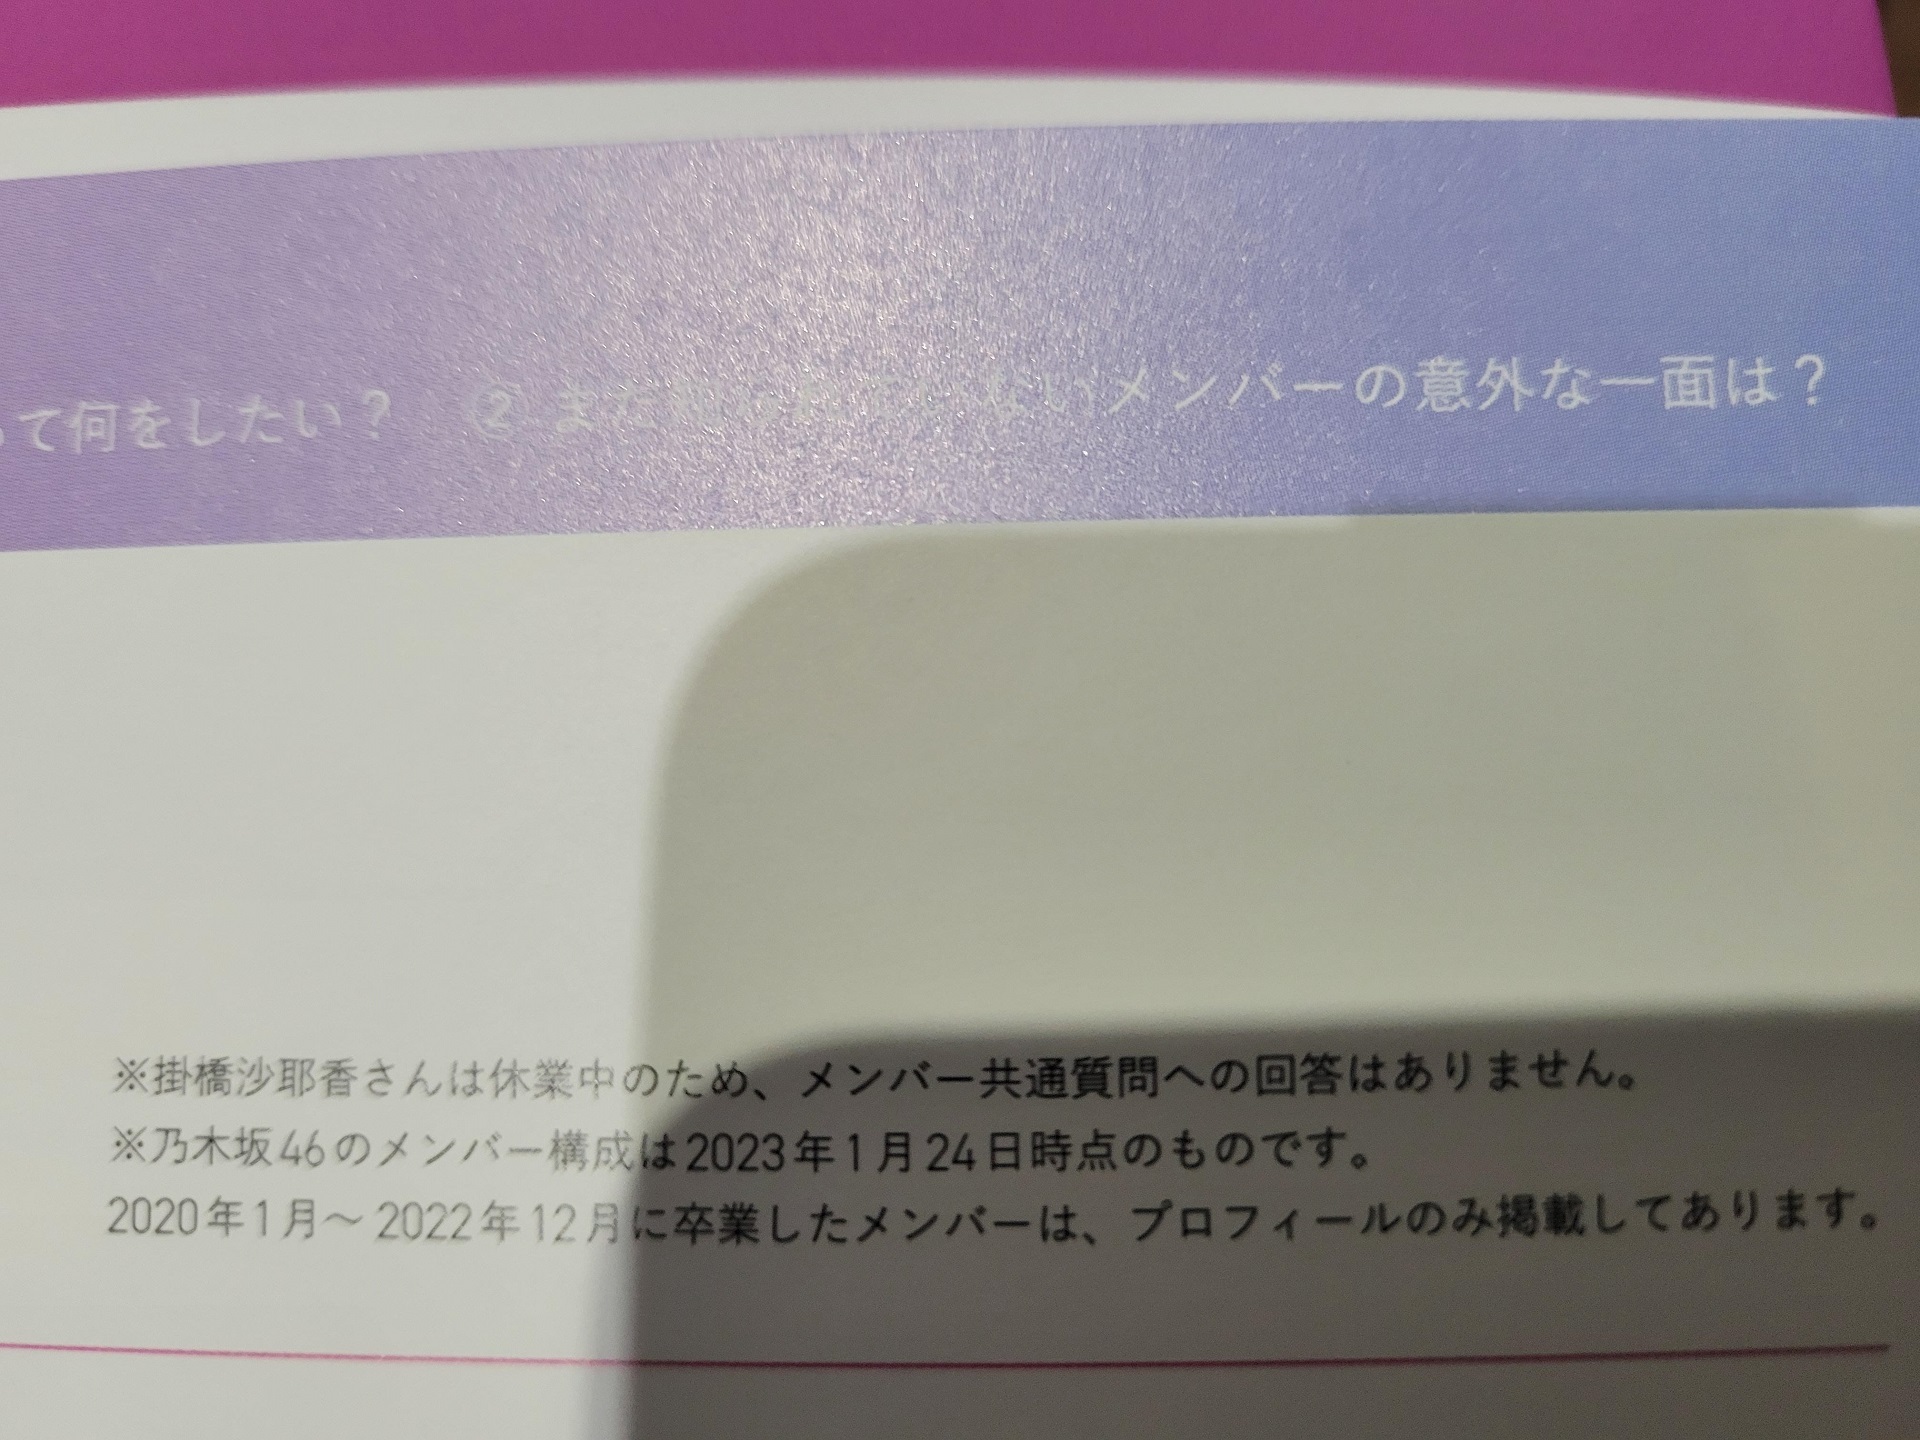 乃木撮VOL.03「掛橋沙耶香さんは休業中のため、メンバー共通質問への回答はありません」